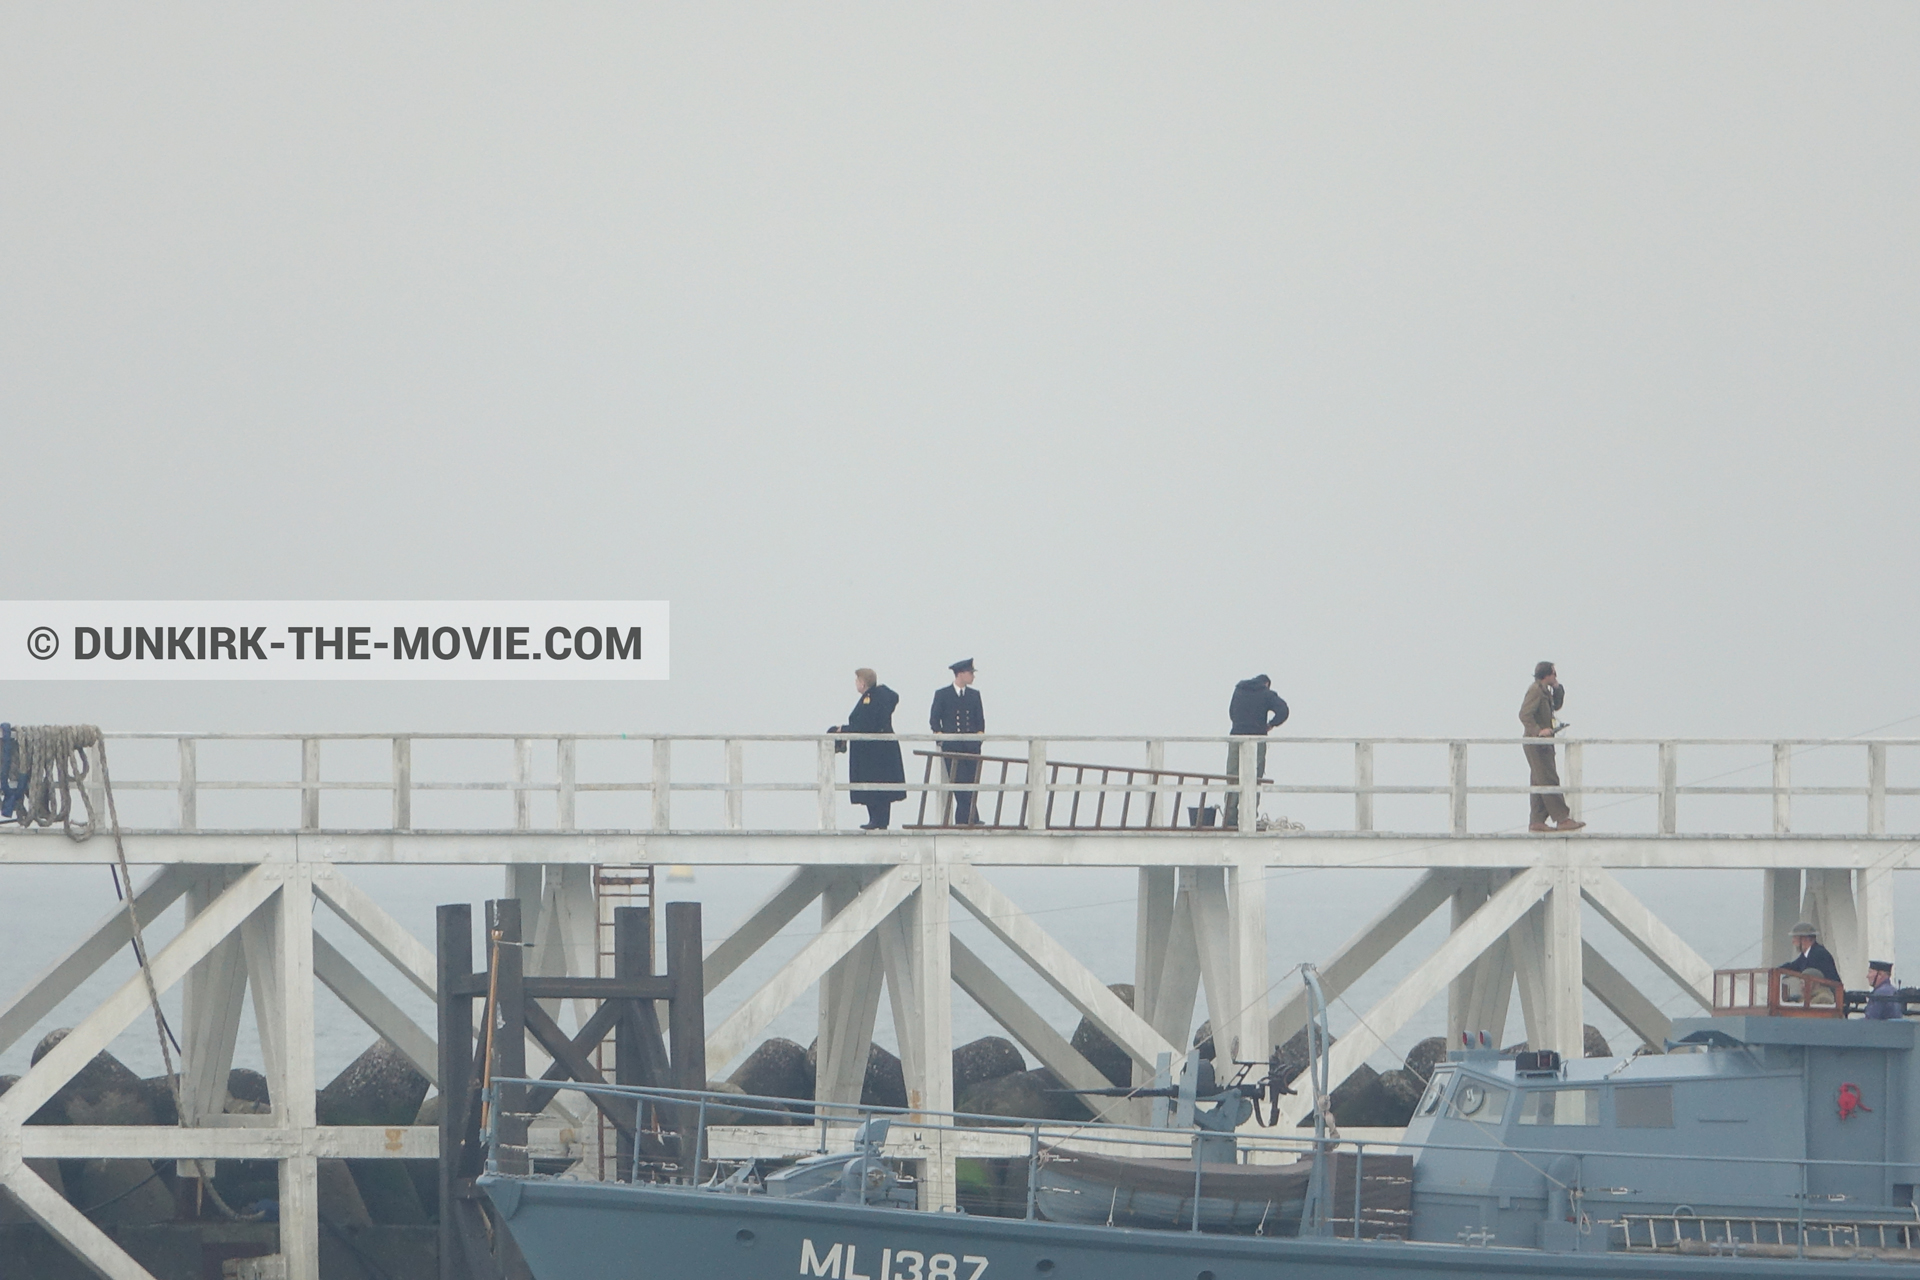 Photo avec acteur, ciel gris, jetée EST, Kenneth Branagh, équipe technique,  des dessous du Film Dunkerque de Nolan